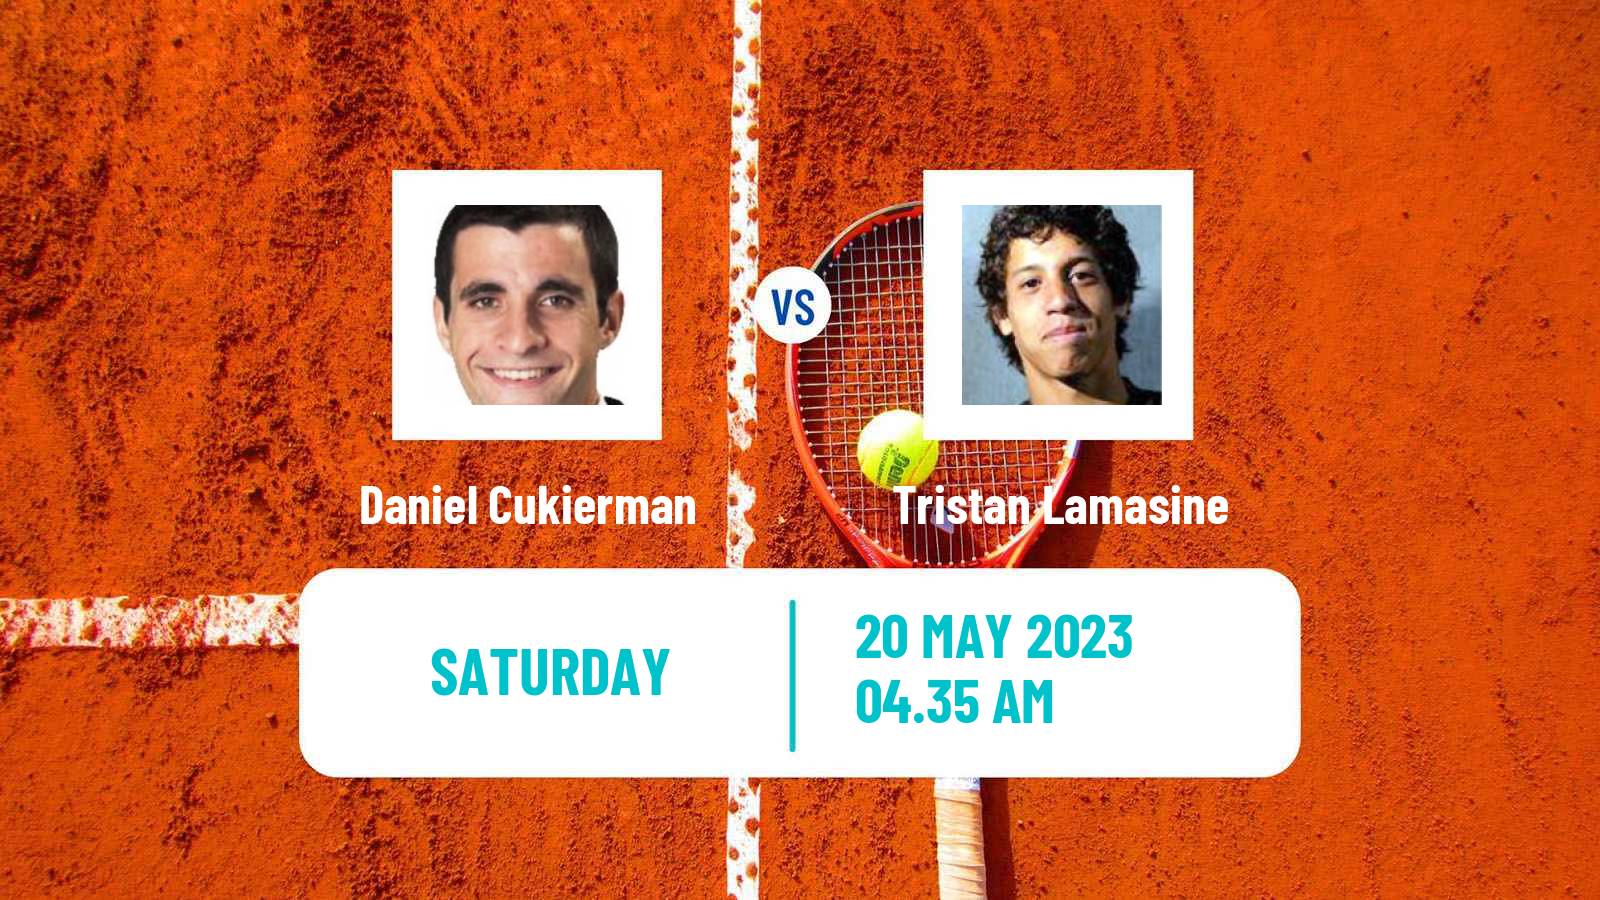 Tennis ITF M25 Gurb Men Daniel Cukierman - Tristan Lamasine